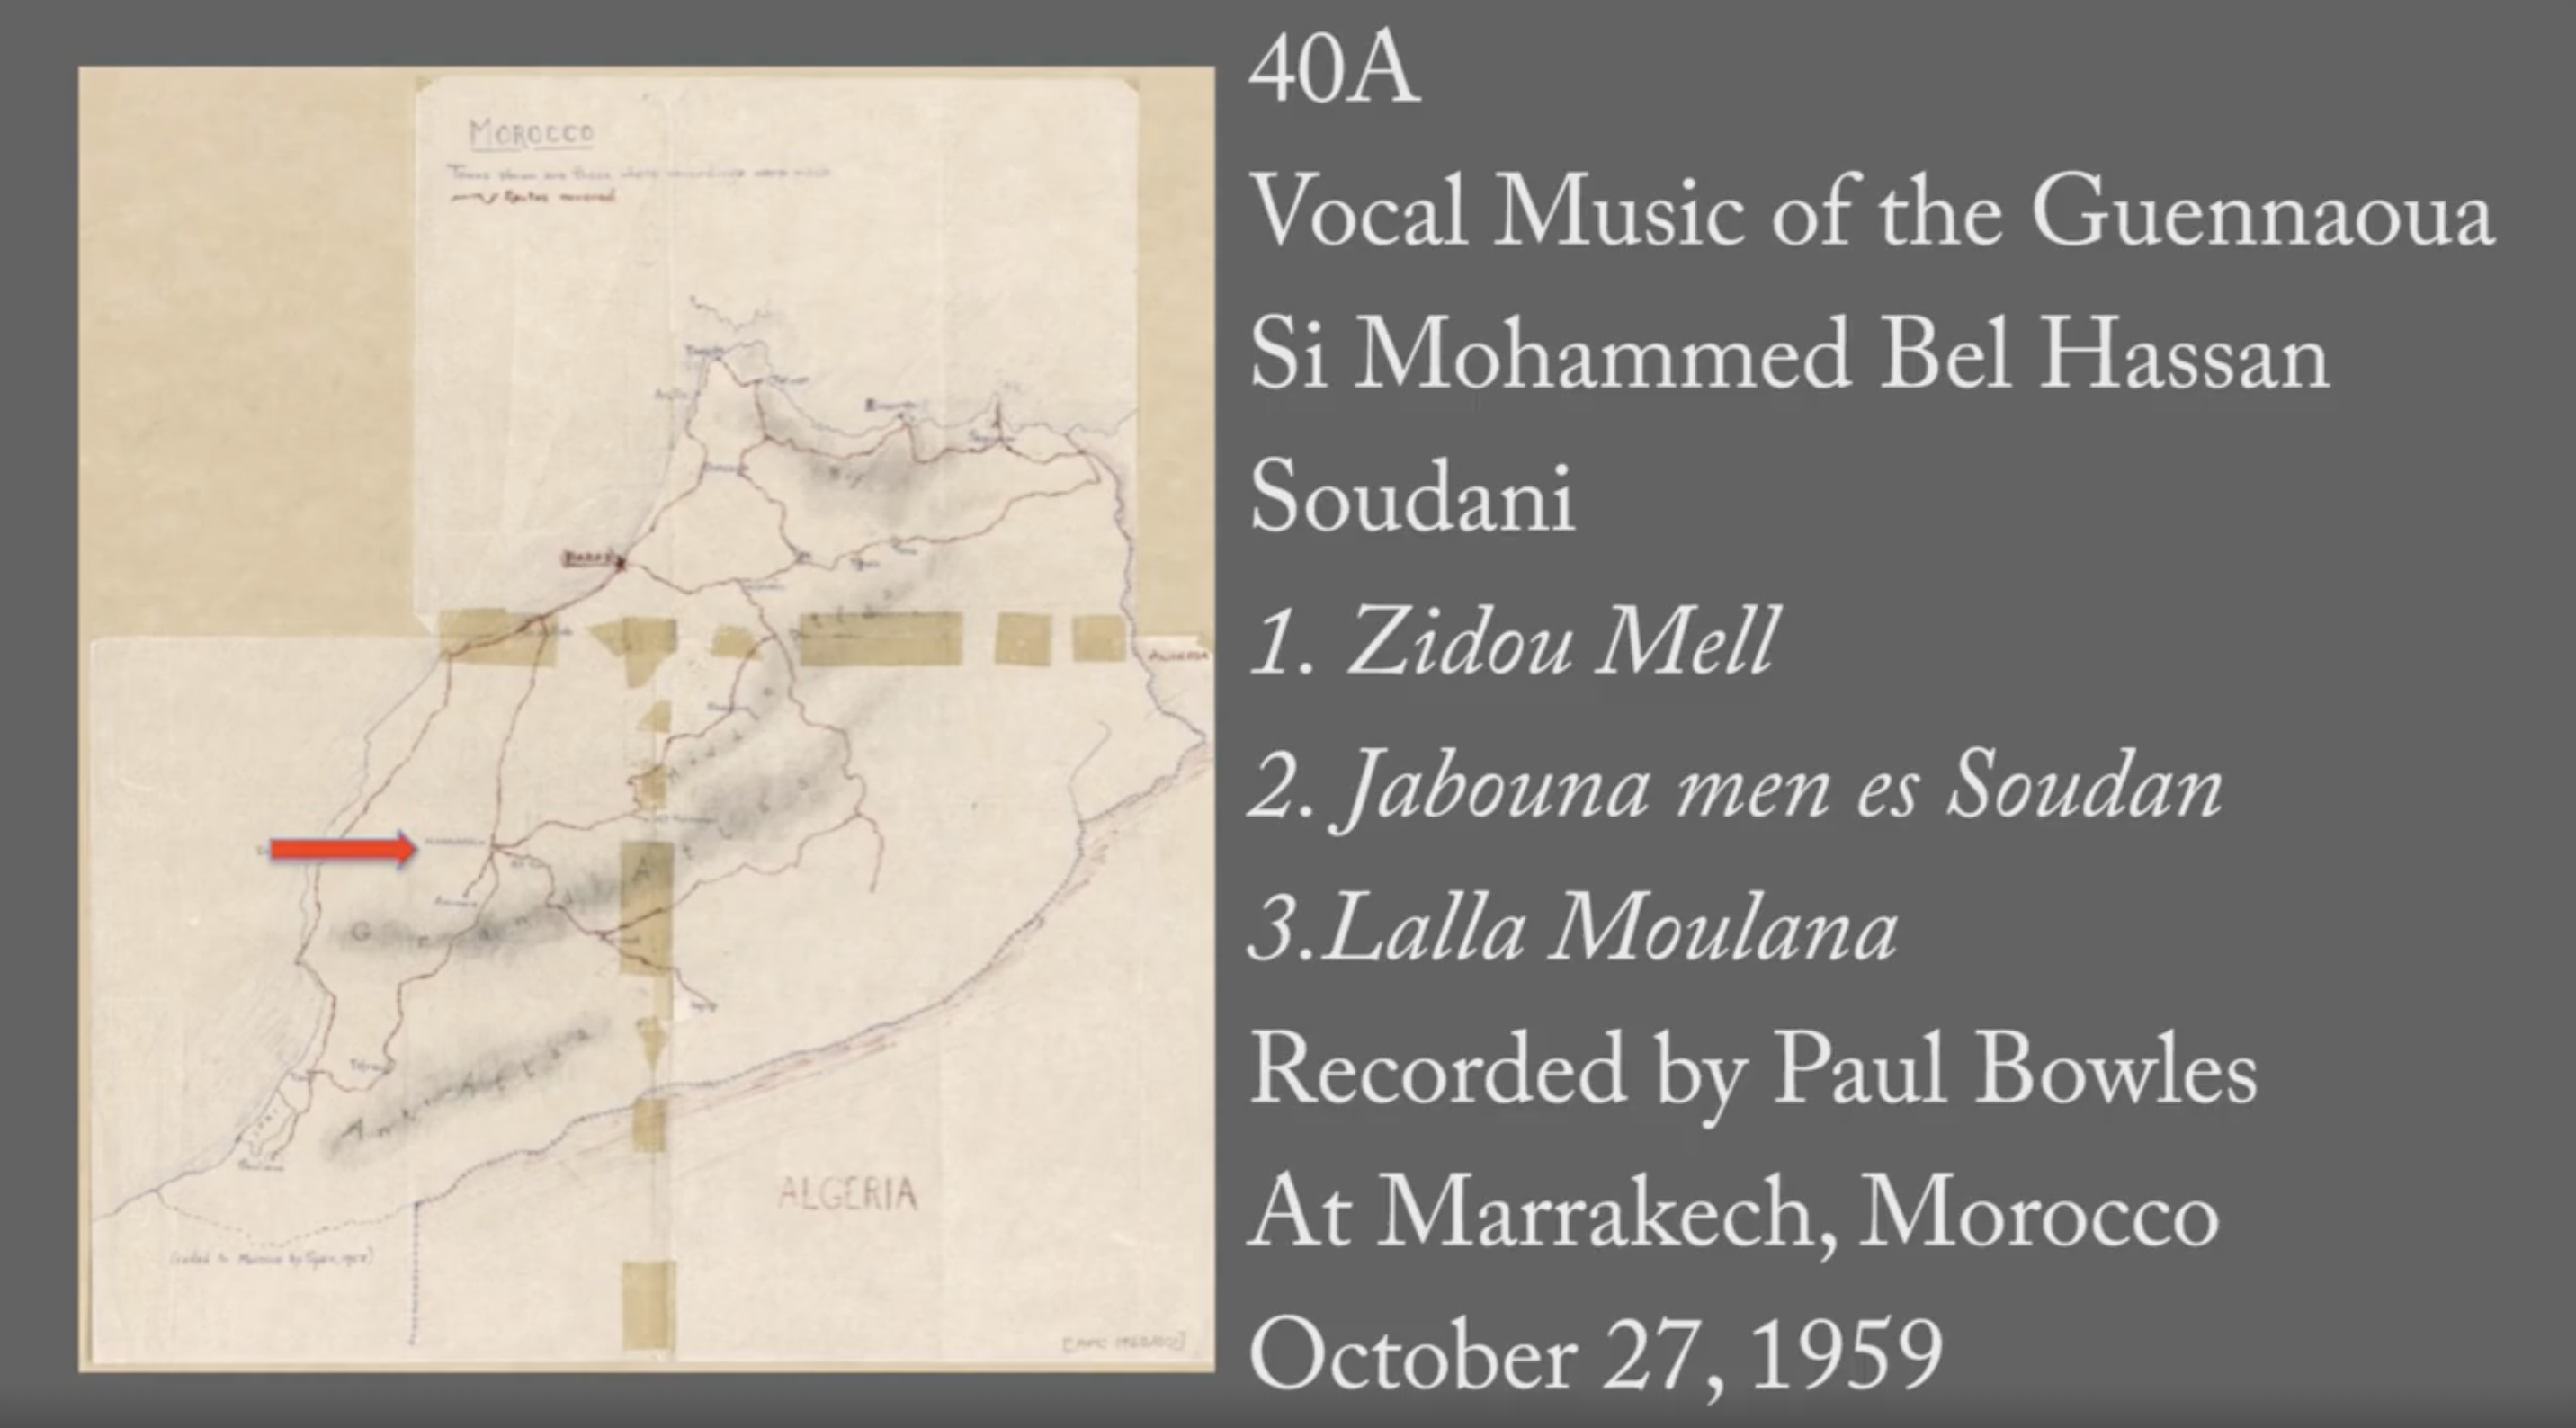 Jama' al-Fna - 40A: "Zidou Mell" (Music of the Guennaoua)